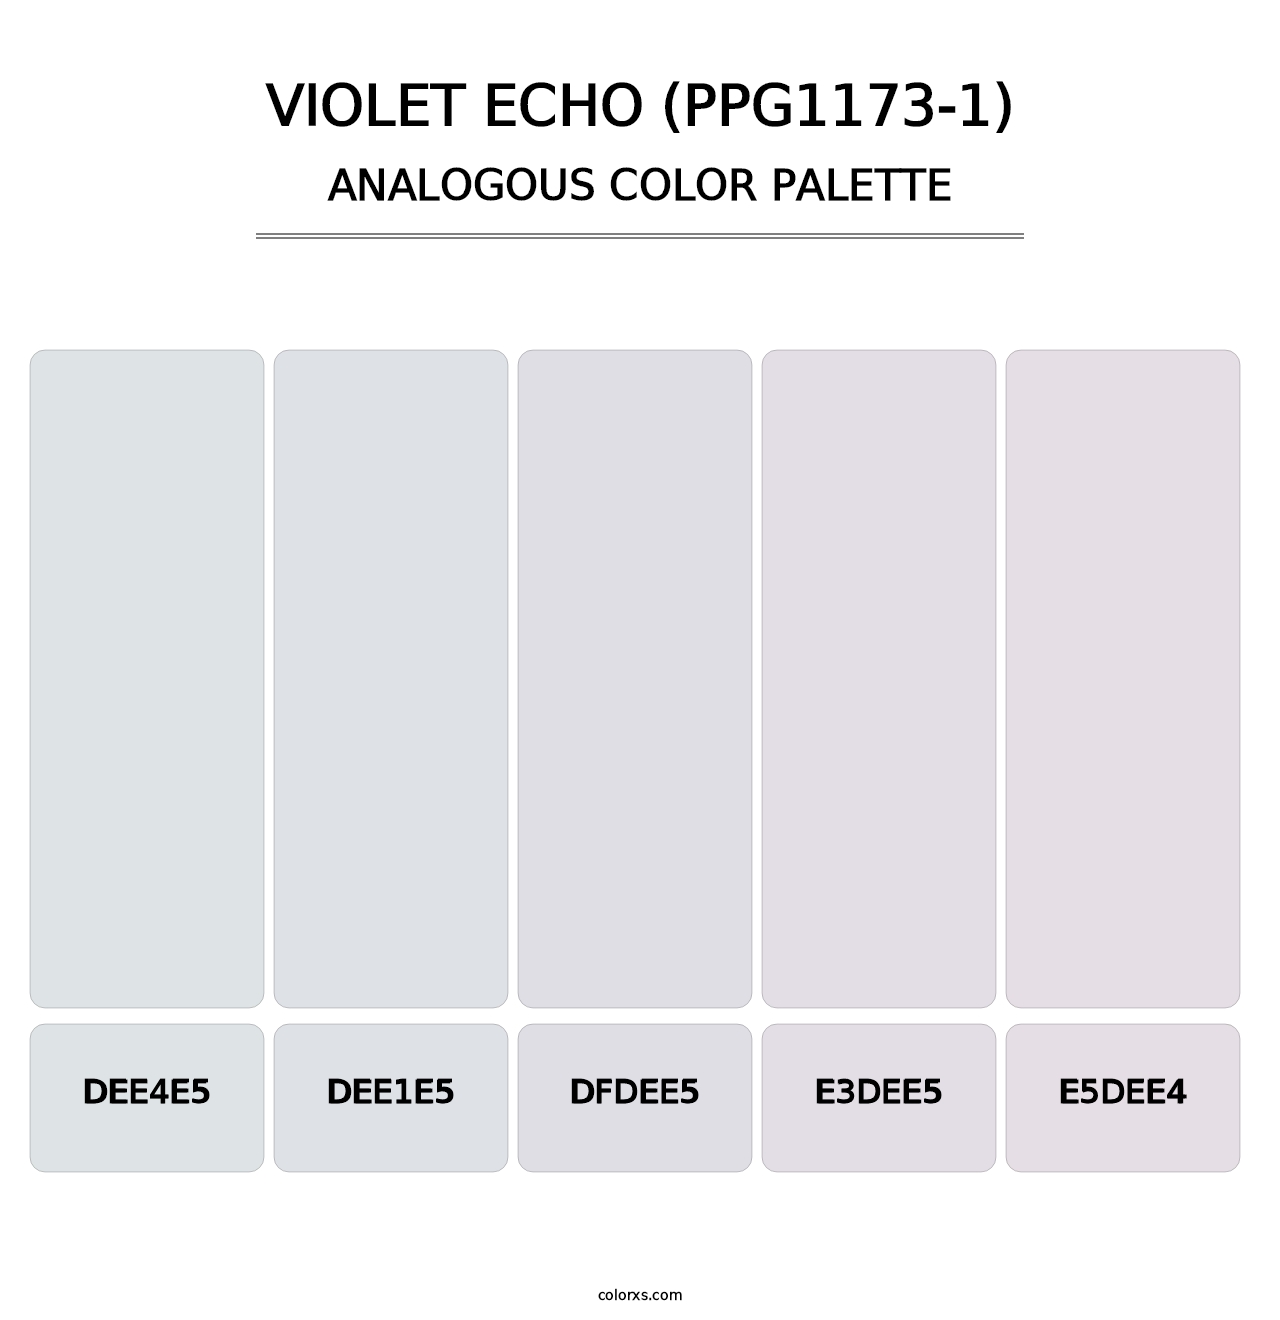 Violet Echo (PPG1173-1) - Analogous Color Palette